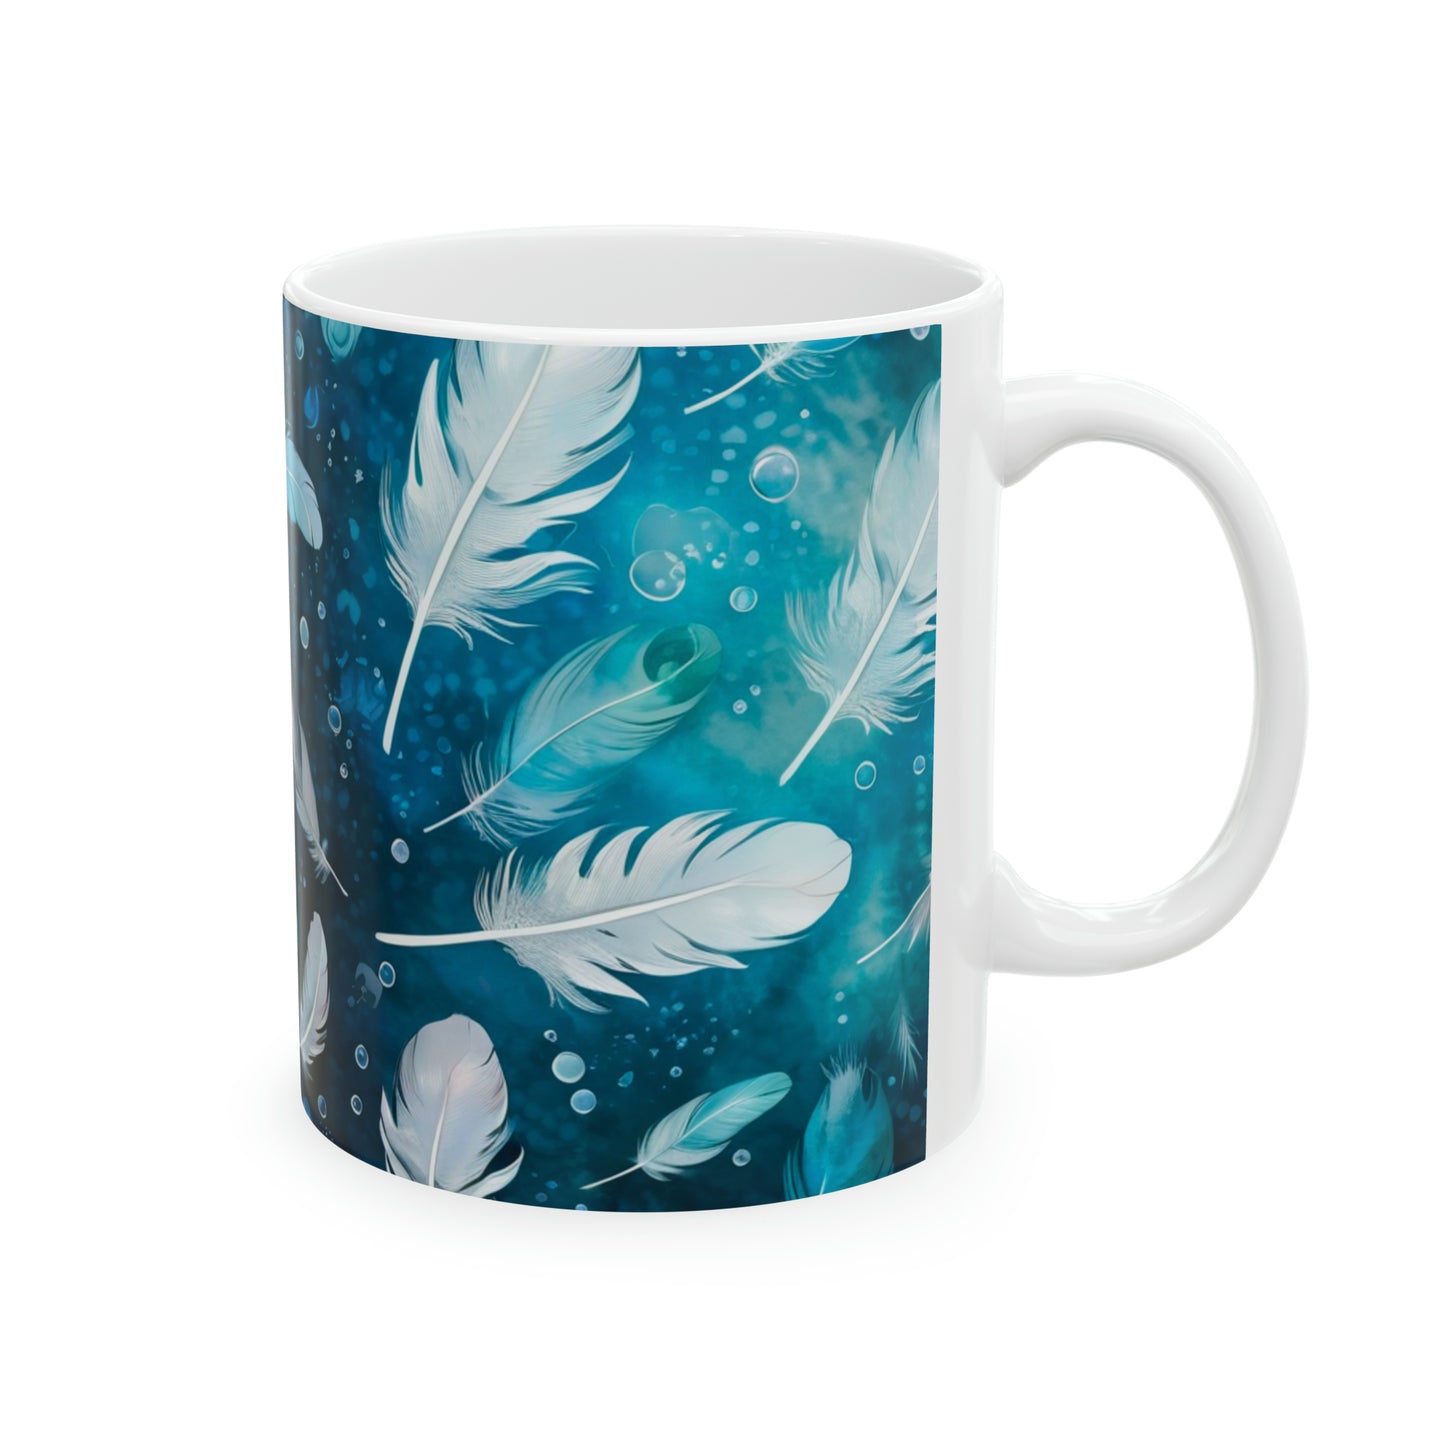 Sea of Feathers Coffee Tea Hot Beverage Decorative Ceramic Mug, 11oz